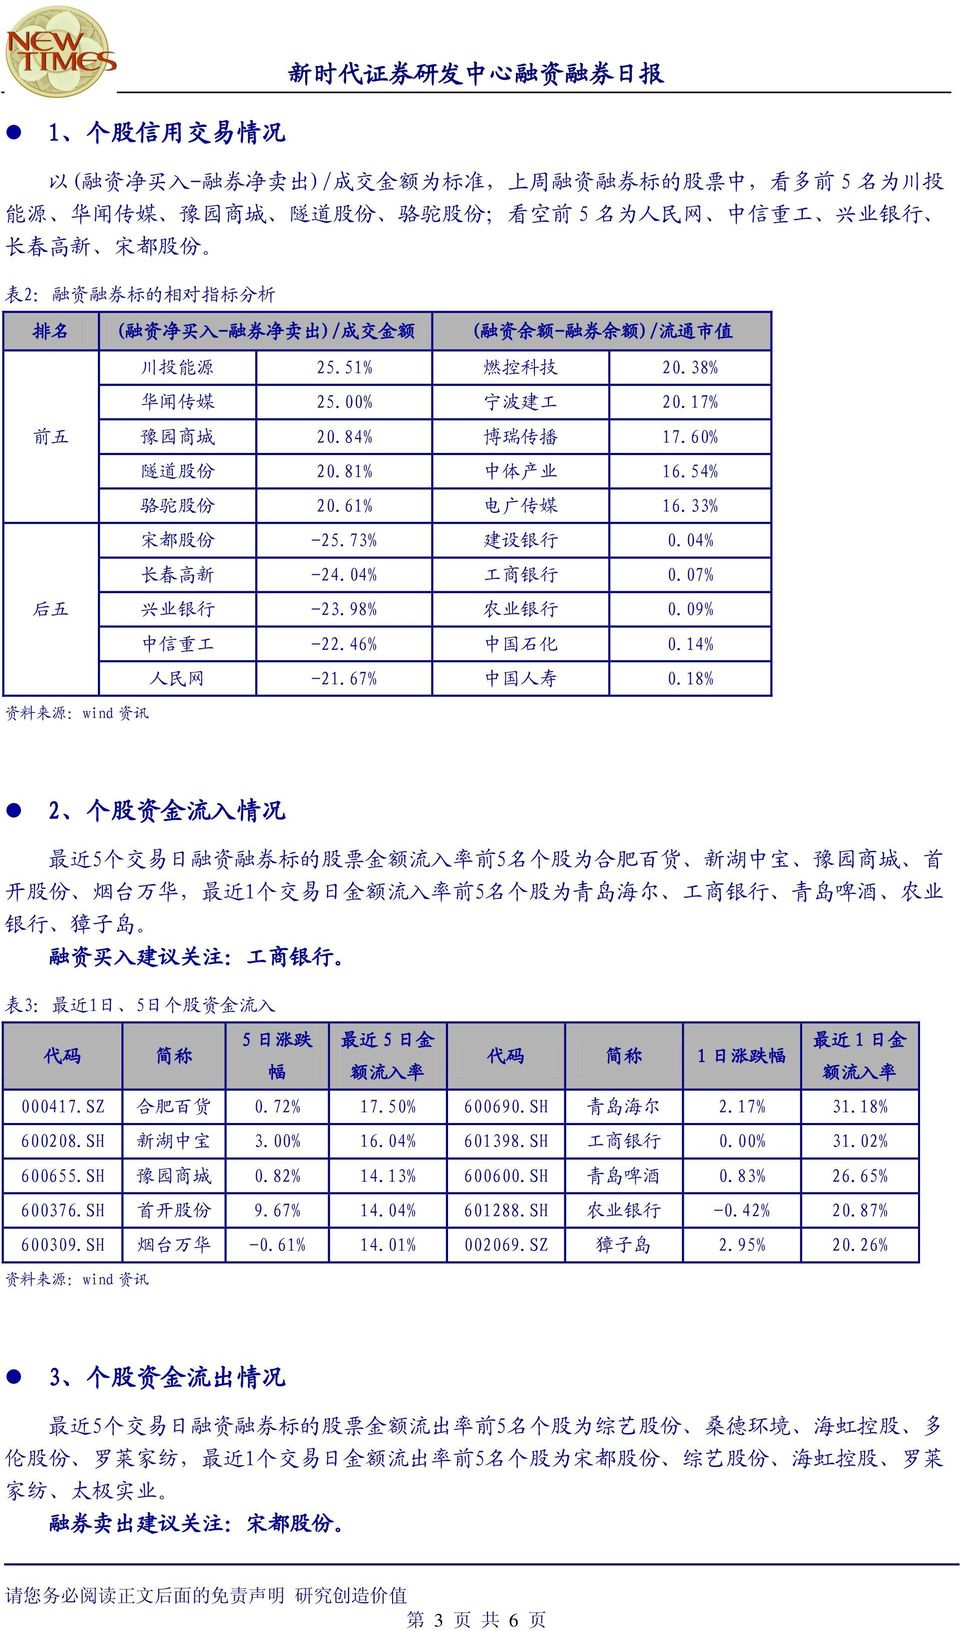 81% 中 体 产 业 16.54% 骆 驼 股 份 20.61% 电 广 传 媒 16.33% 宋 都 股 份 -25.73% 建 设 银 行 0.04% 长 春 高 新 -24.04% 工 商 银 行 0.07% 后 五 兴 业 银 行 -23.98% 农 业 银 行 0.09% 中 信 重 工 -22.46% 中 国 石 化 0.14% 人 民 网 -21.67% 中 国 人 寿 0.